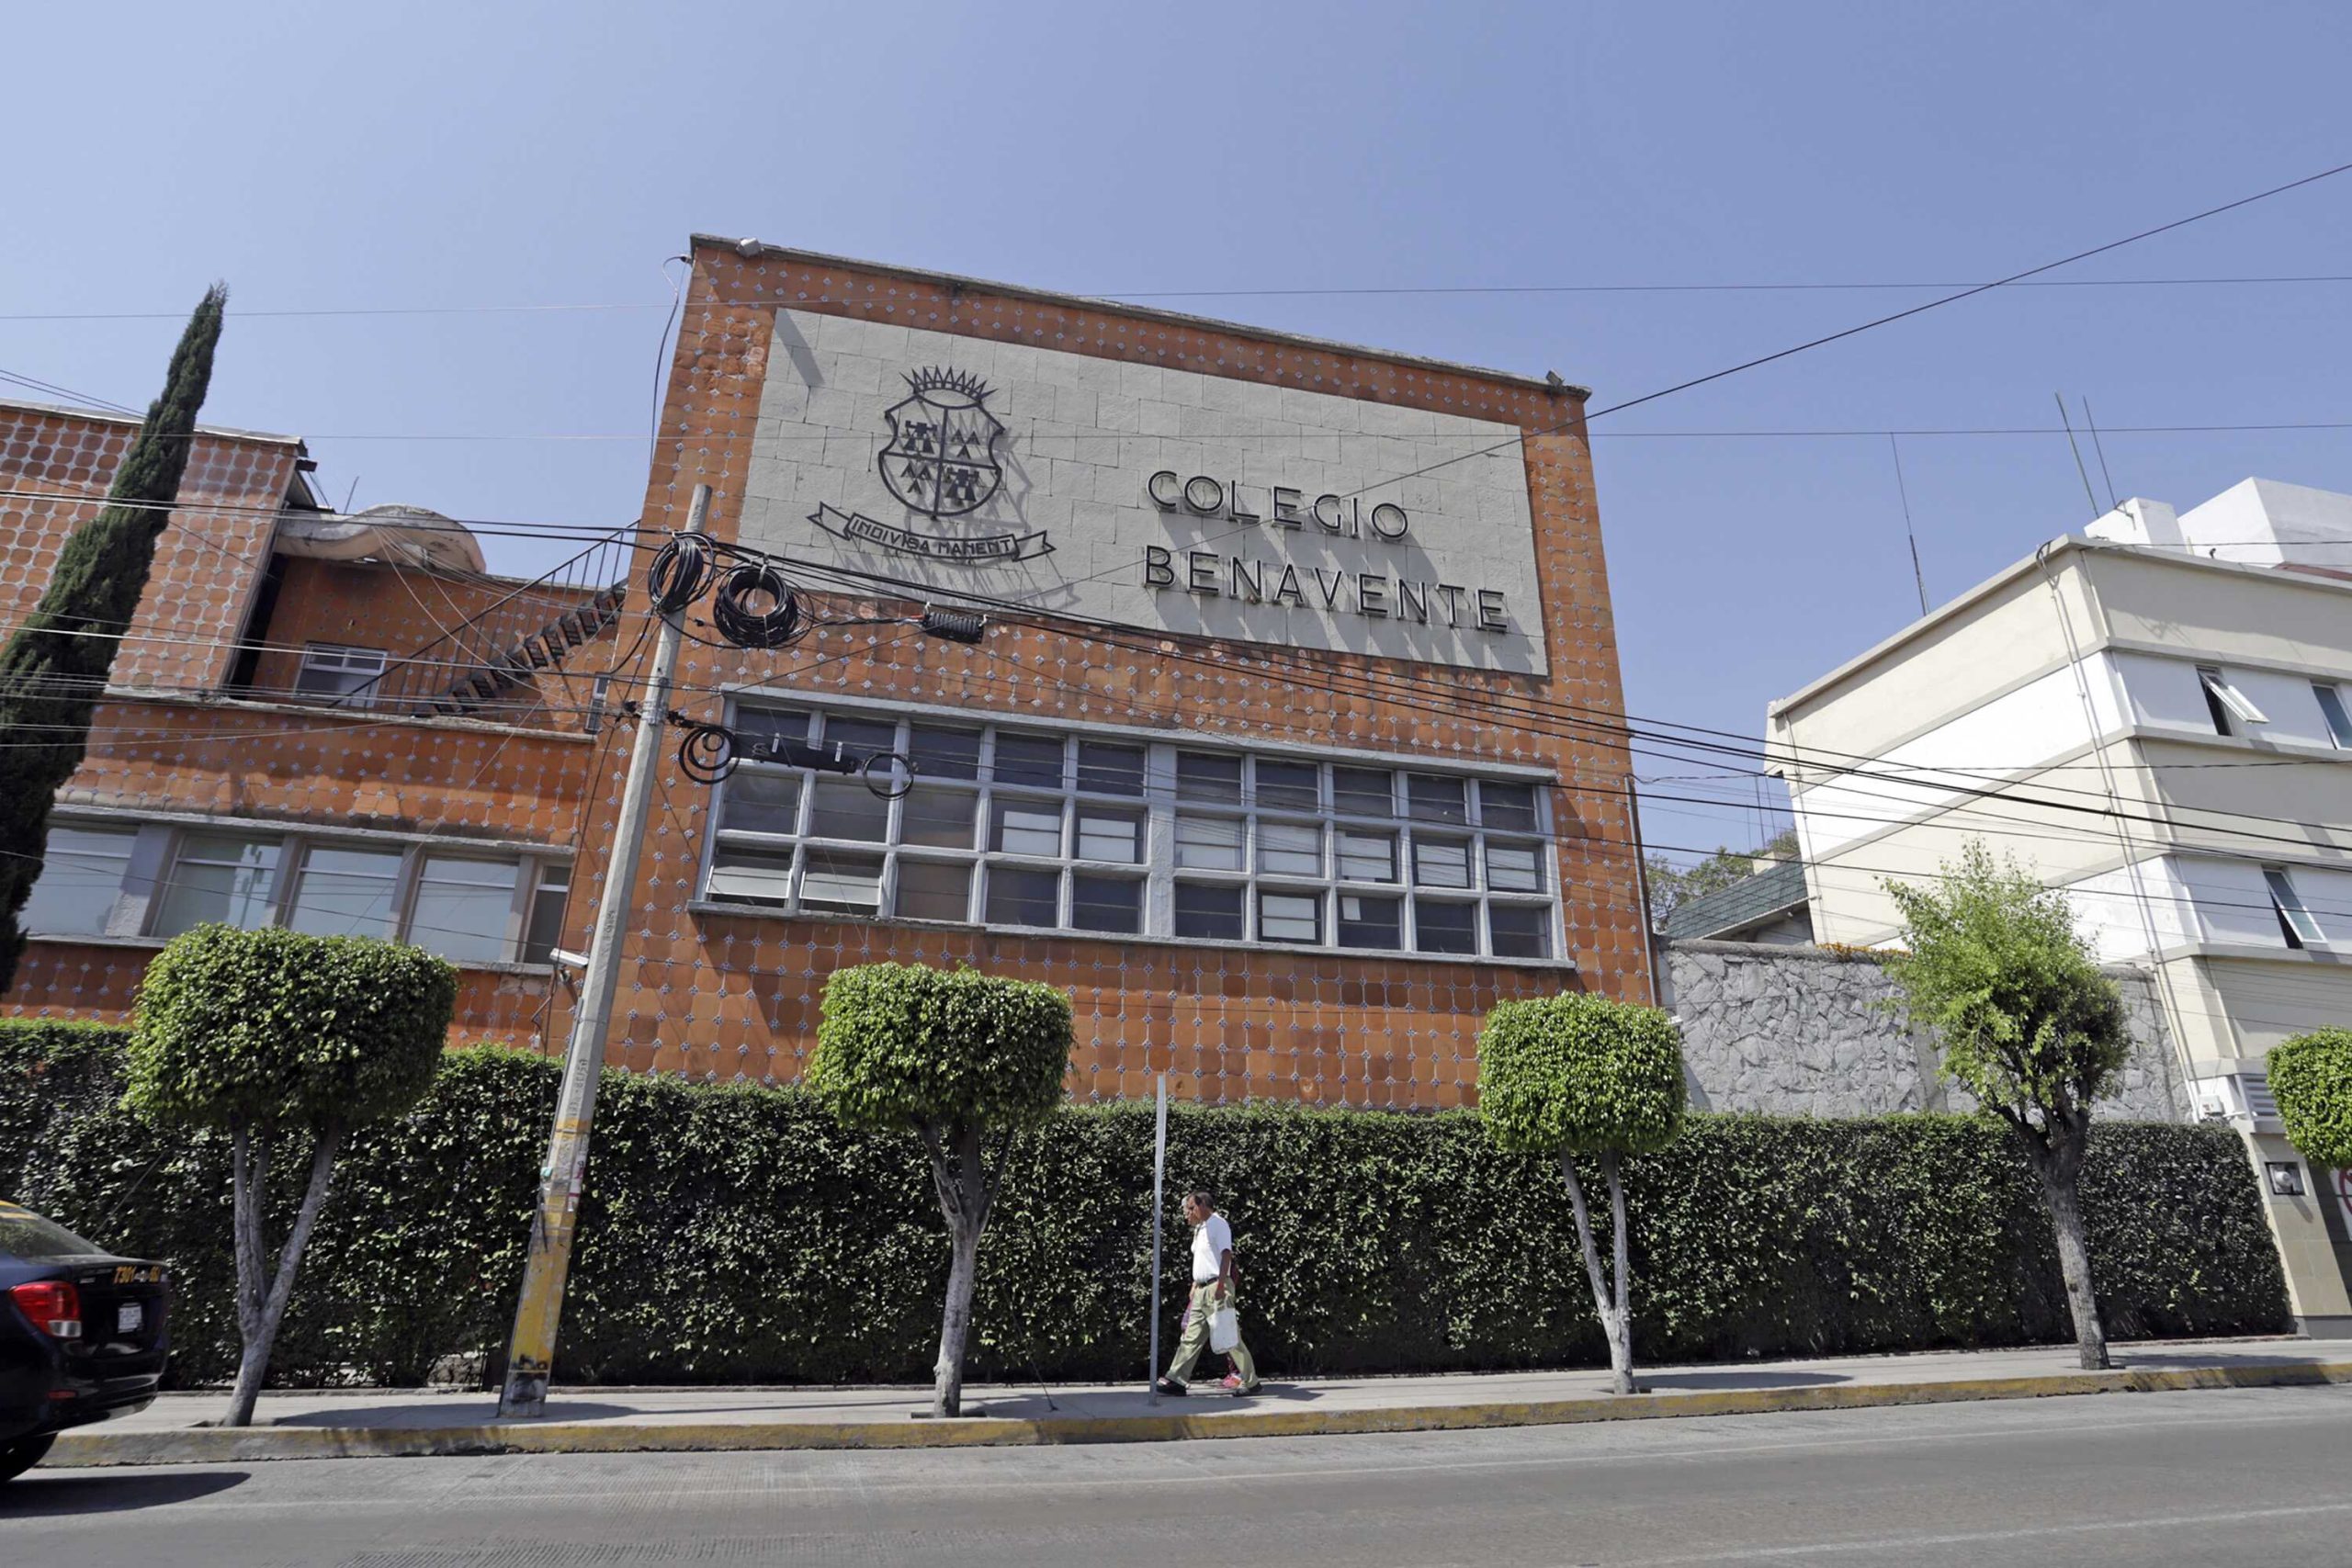 Conflicto en Colegio Benavente, aseguran, ocurrió en enero